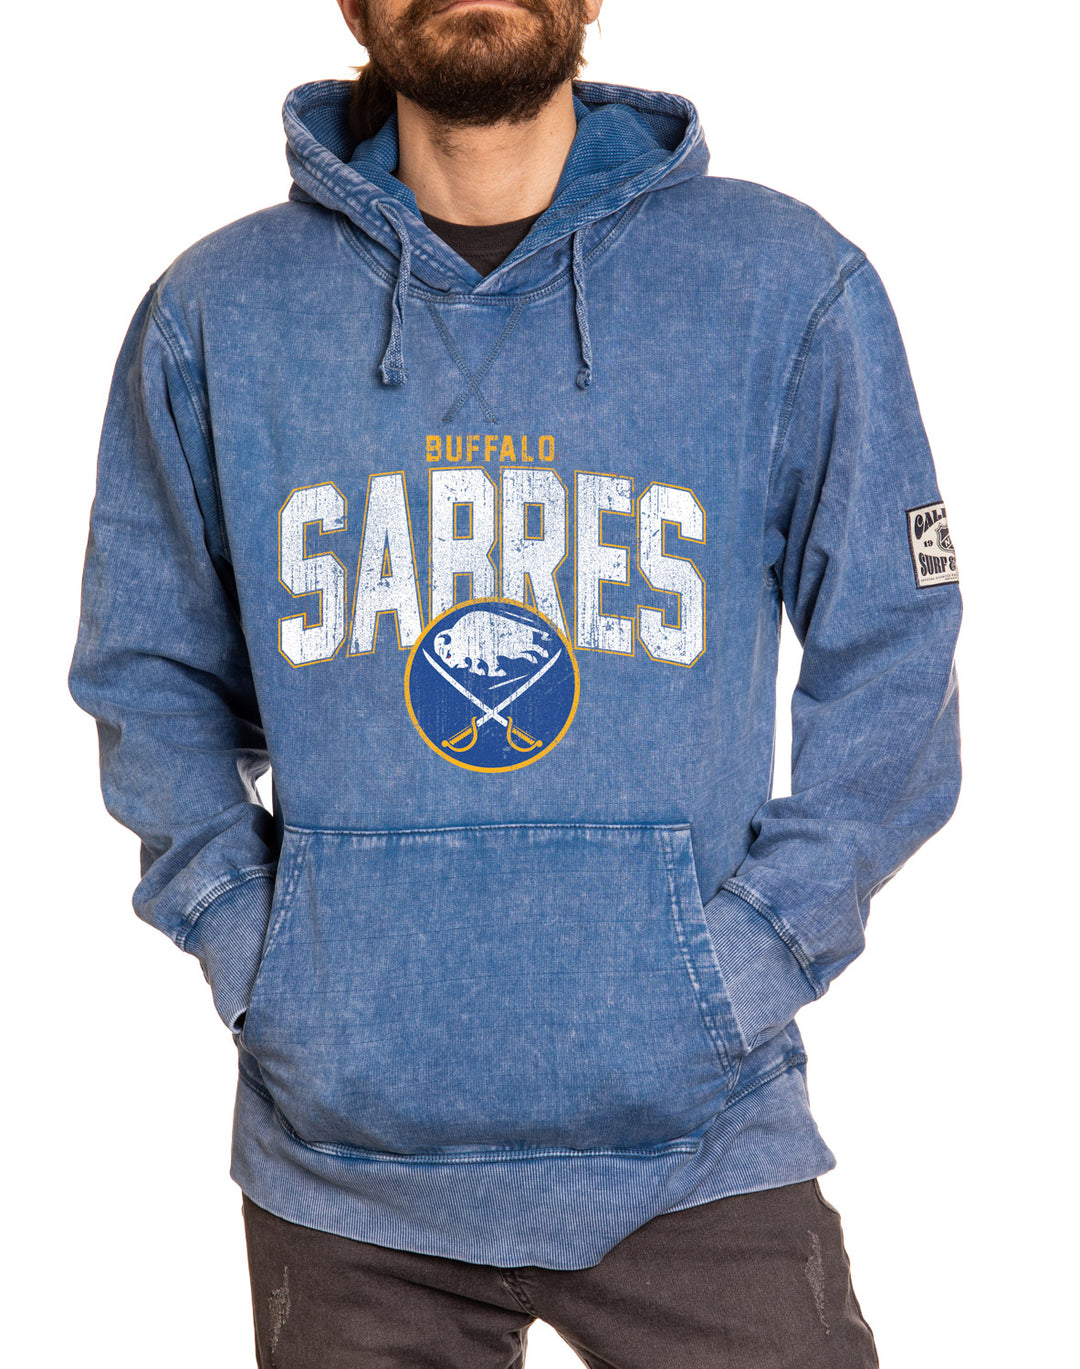 Official NHL licensed Buffalo Sabres Unisex Blue Acid Wash Hoodie